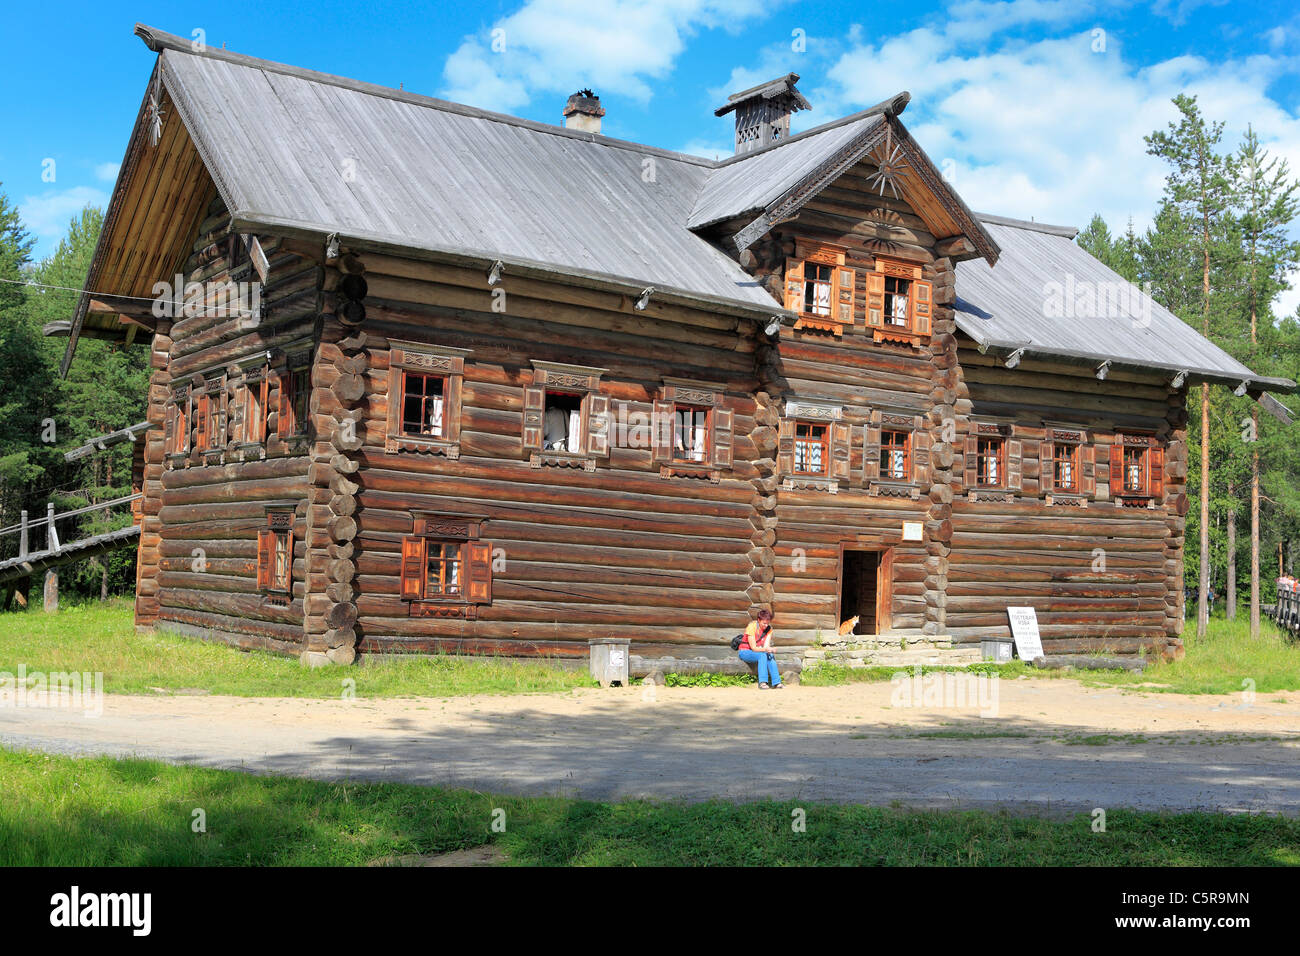 Holzhaus, Freilichtmuseum Holzarchitektur, Malye Korely, in der Nähe von Archangelsk, Archangelsk (Archangelsk) Region, Russland Stockfoto